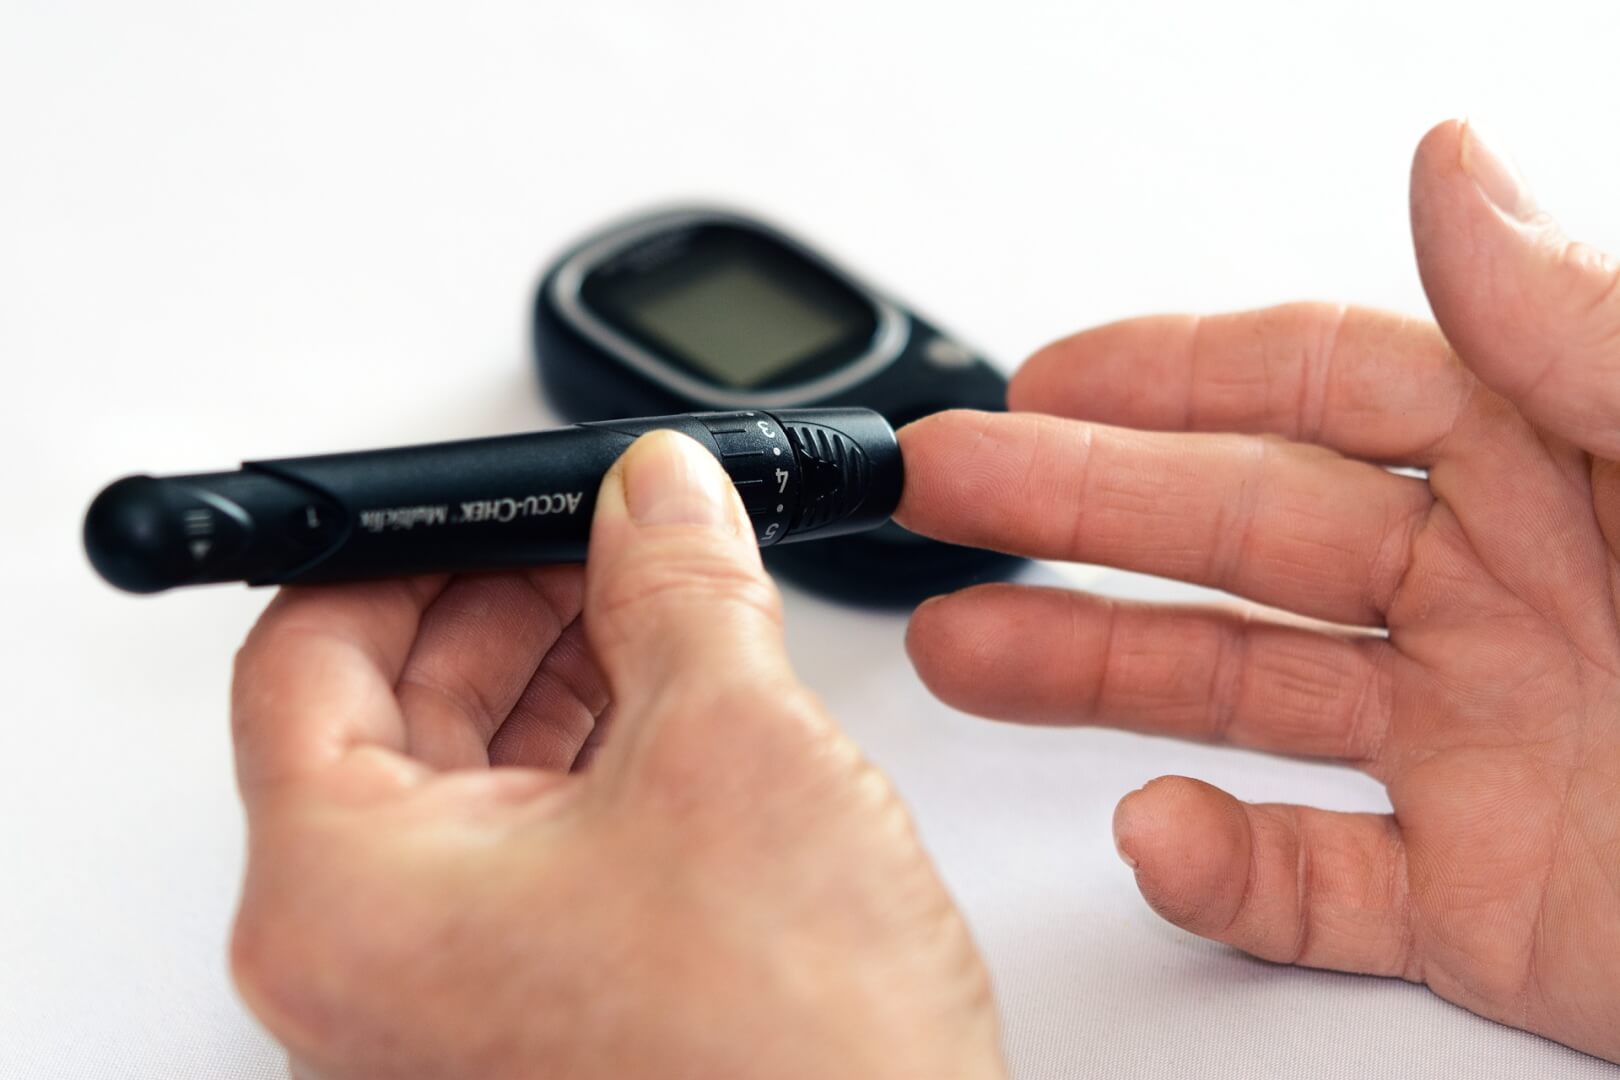 Unas manos de una persona mayor. Se muestra un aparato, llamado glucómetro, que mide el nivel de azúcar en sangre.